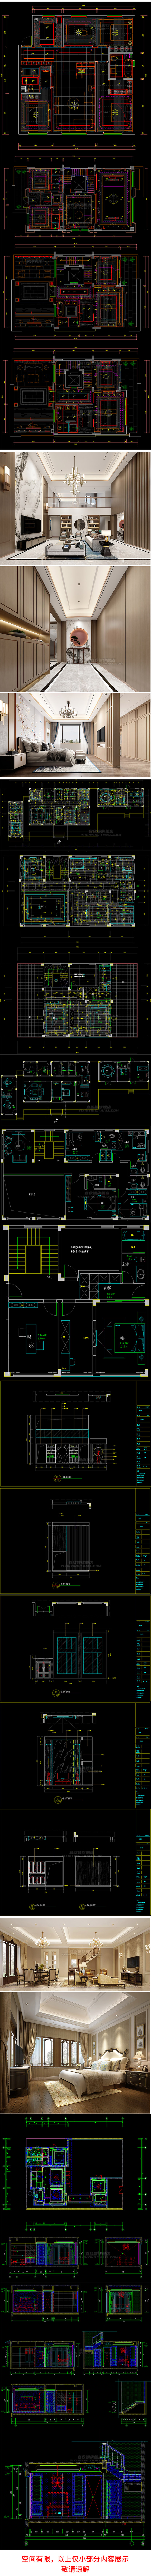 257套欧式别墅全套室内家装装修设计方案效果图平面立面CAD施工图图纸 图片素材 第3张